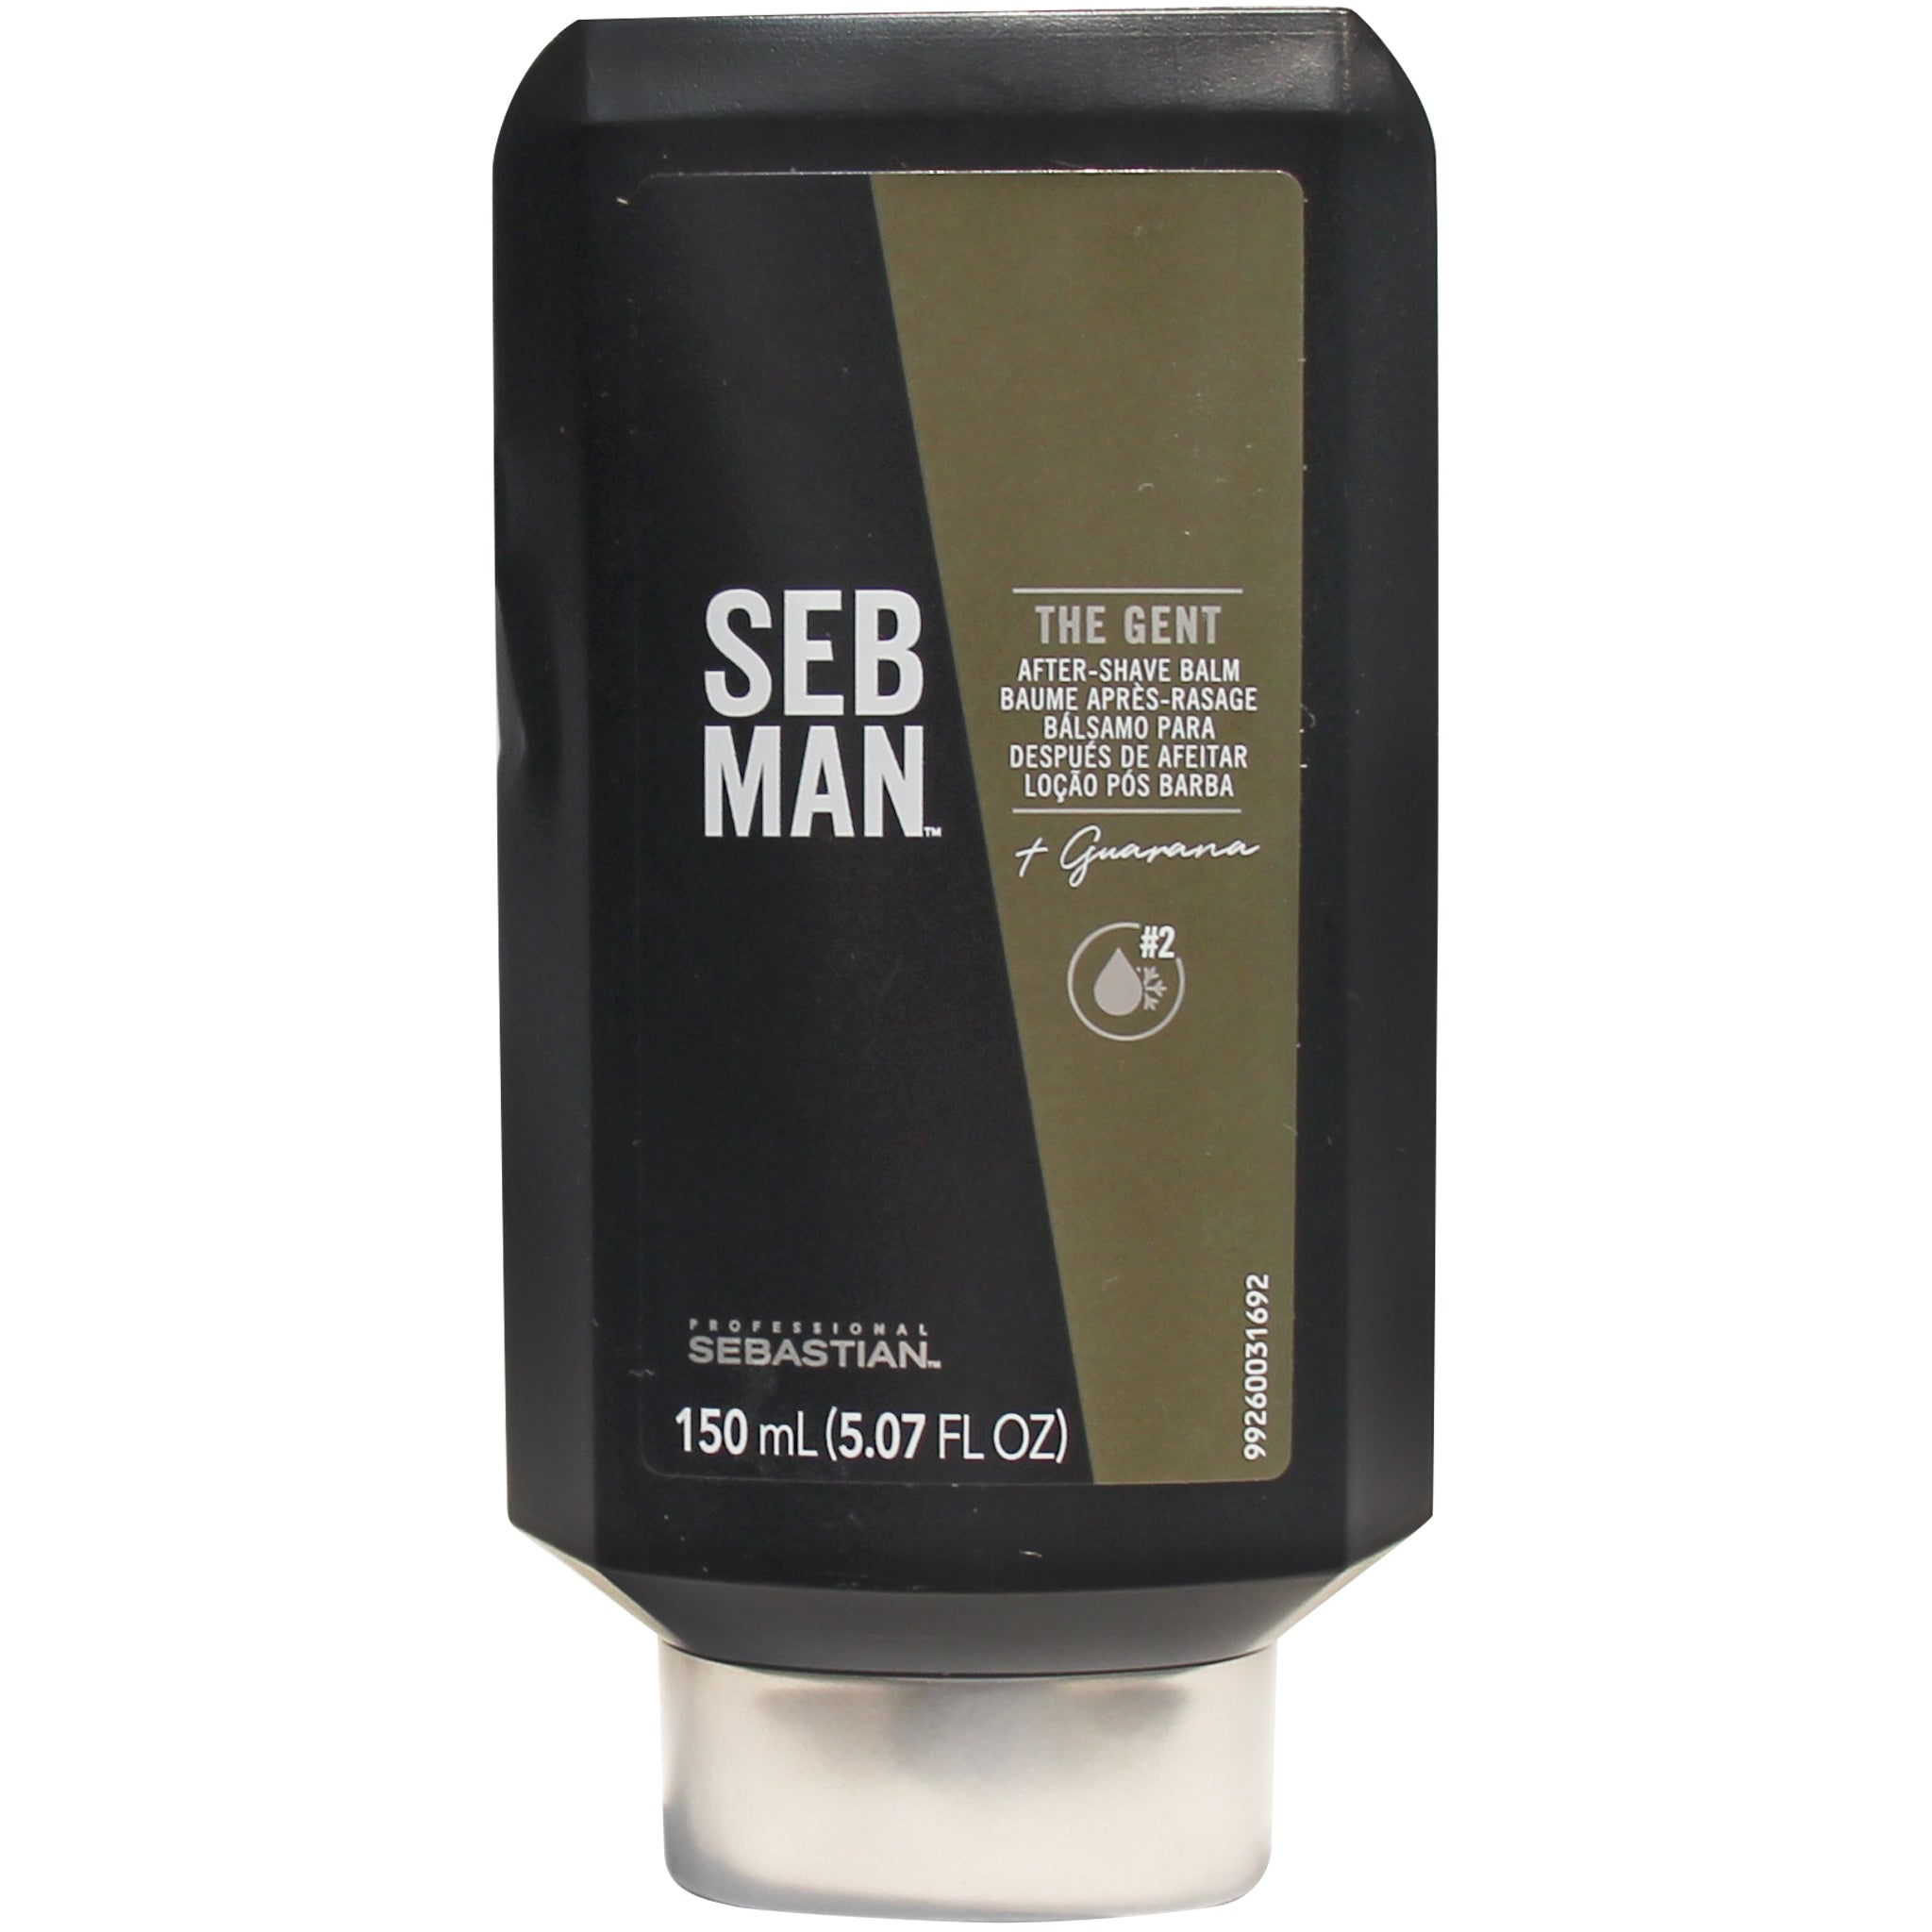 Seb Man the Gent balsamo Ayuda hidratar la piel después del afeitado, una loción que brinda  rápido alivio